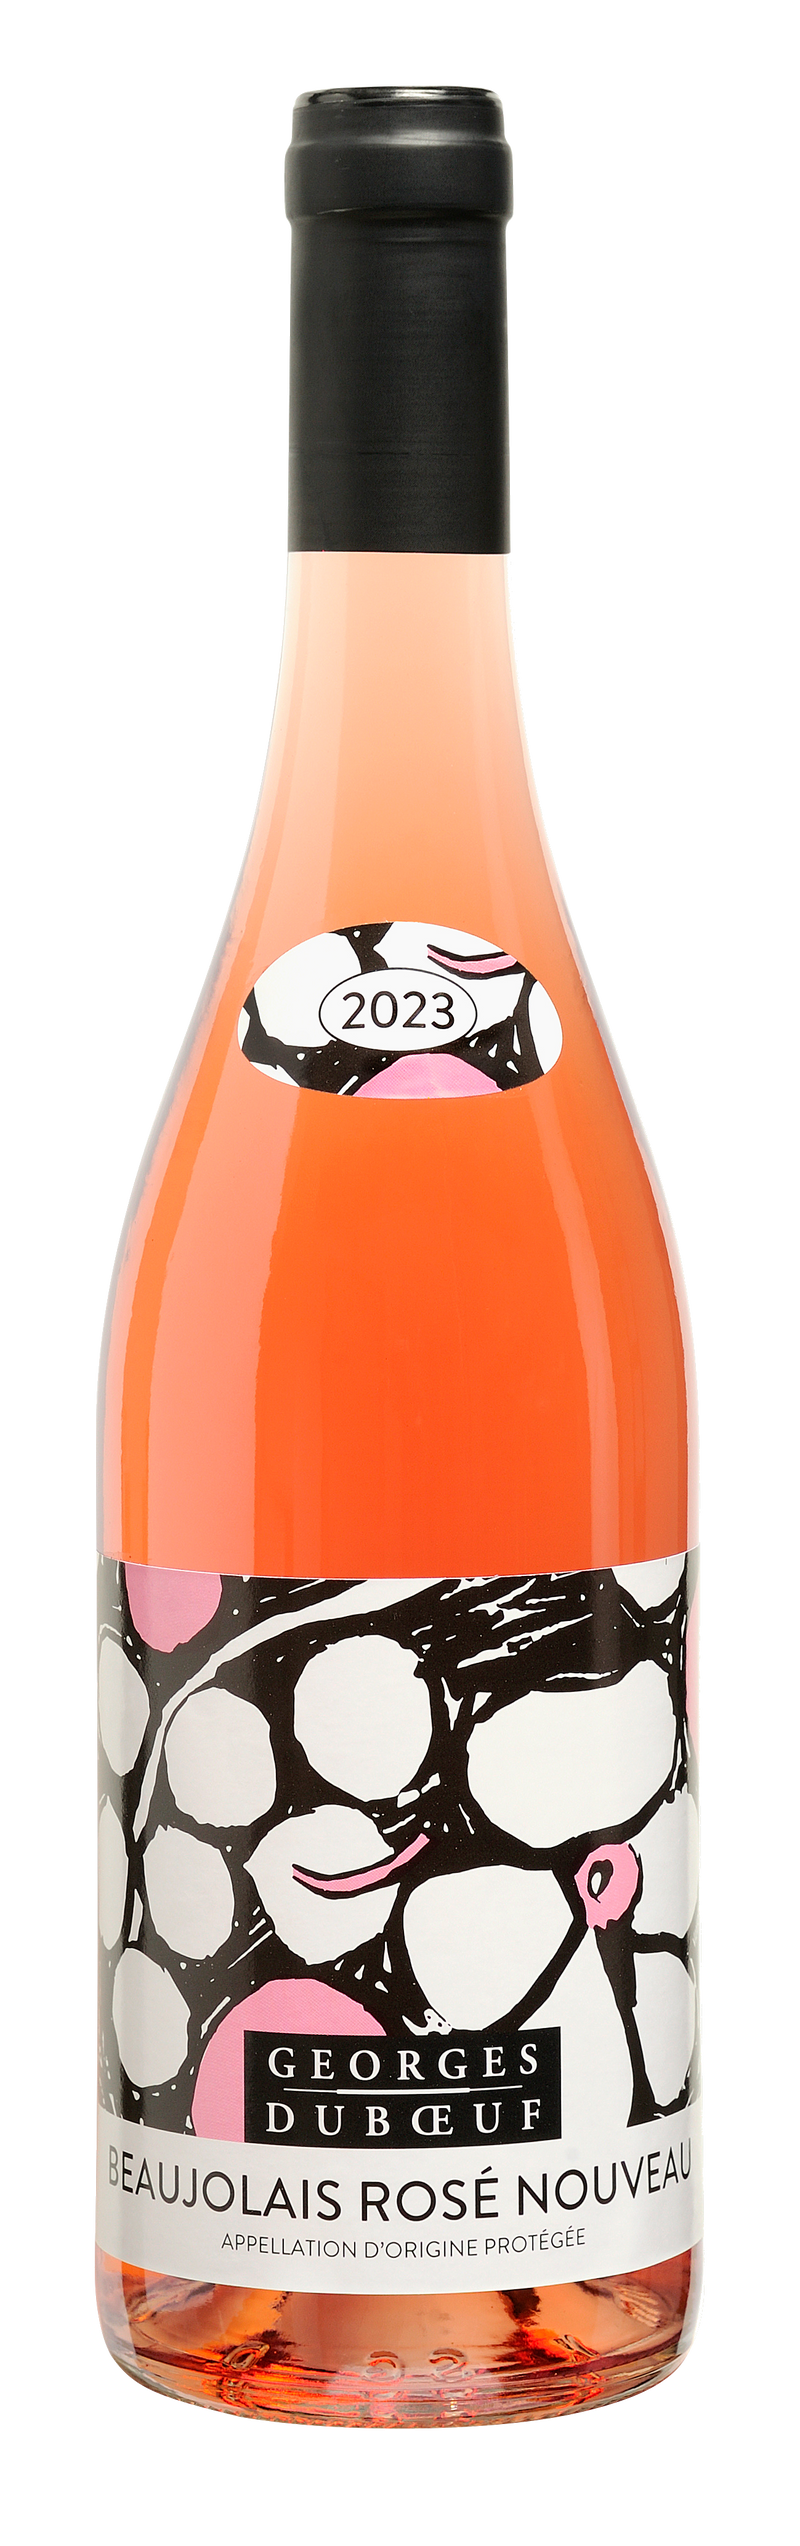 2023 Georges Duboeuf Beaujolais Rosé Nouveau